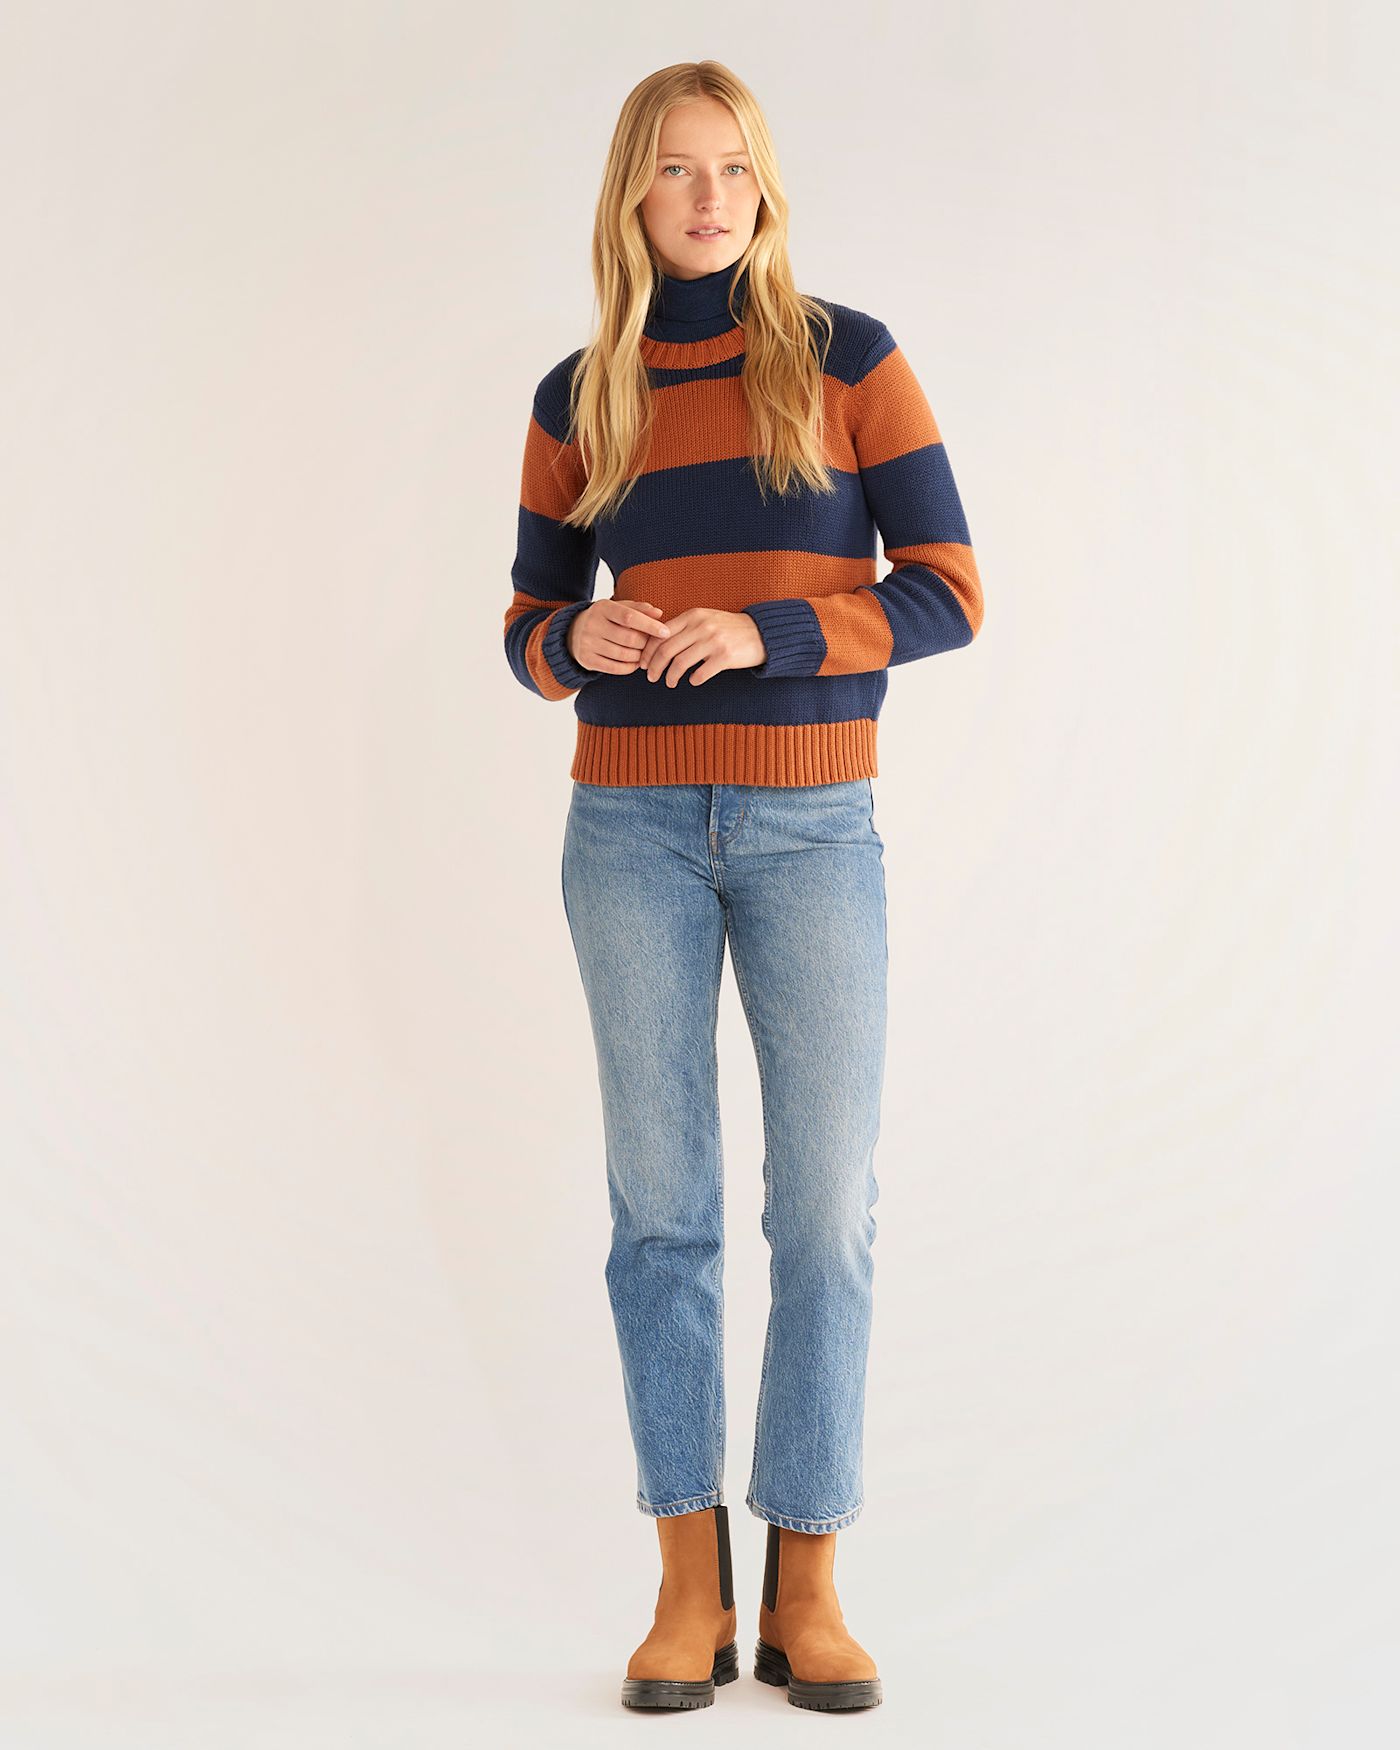 Shop Classy Women's Sweaters on Sale | Pendleton